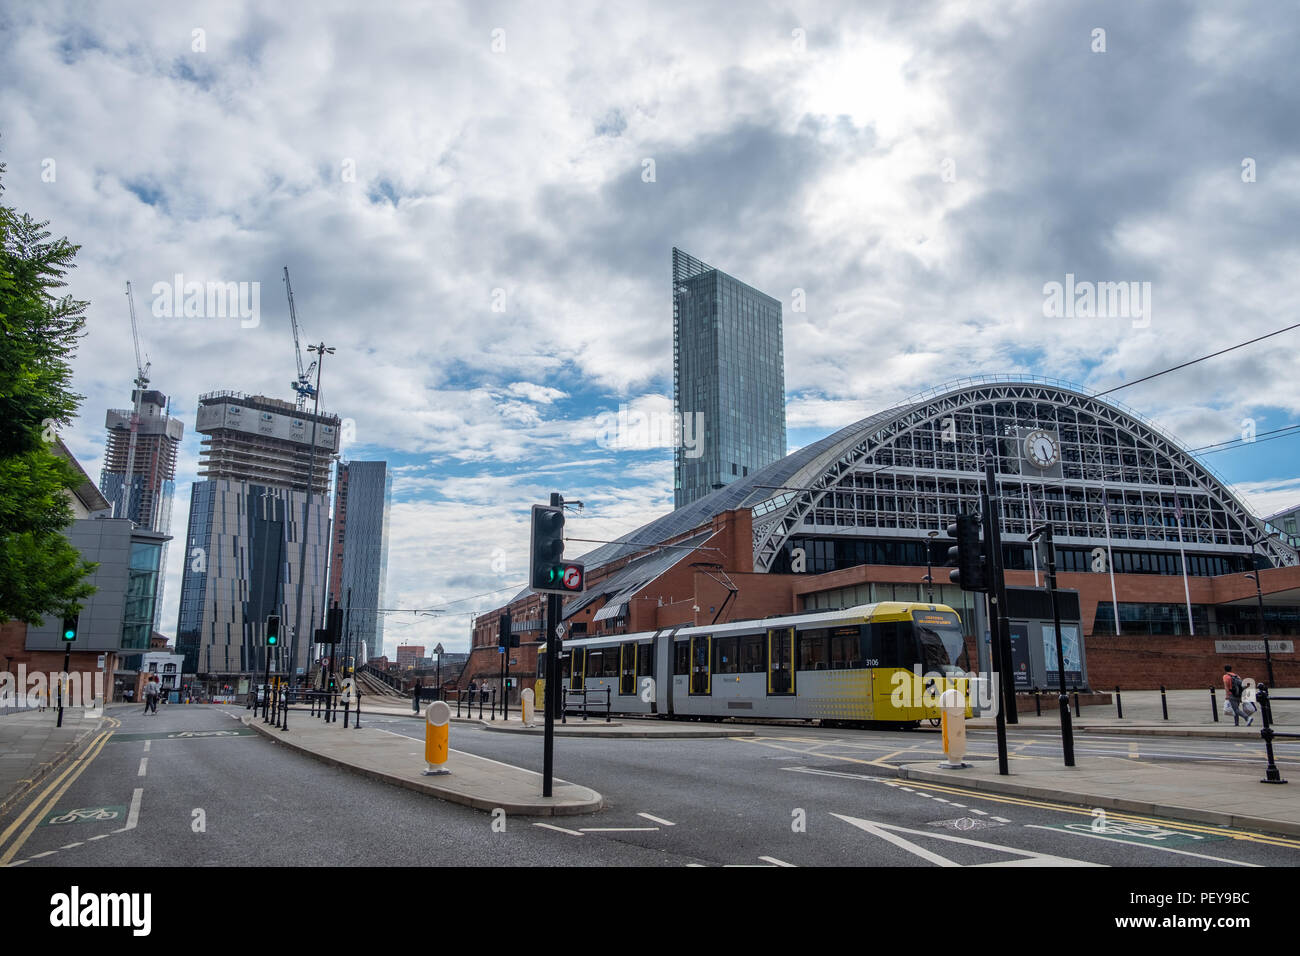 Manchester, Royaume-Uni - Juillet 21, 2018 : Le Manchester Central Convention Complex à l'avant-plan et une construction à l'arrière-plan. Banque D'Images